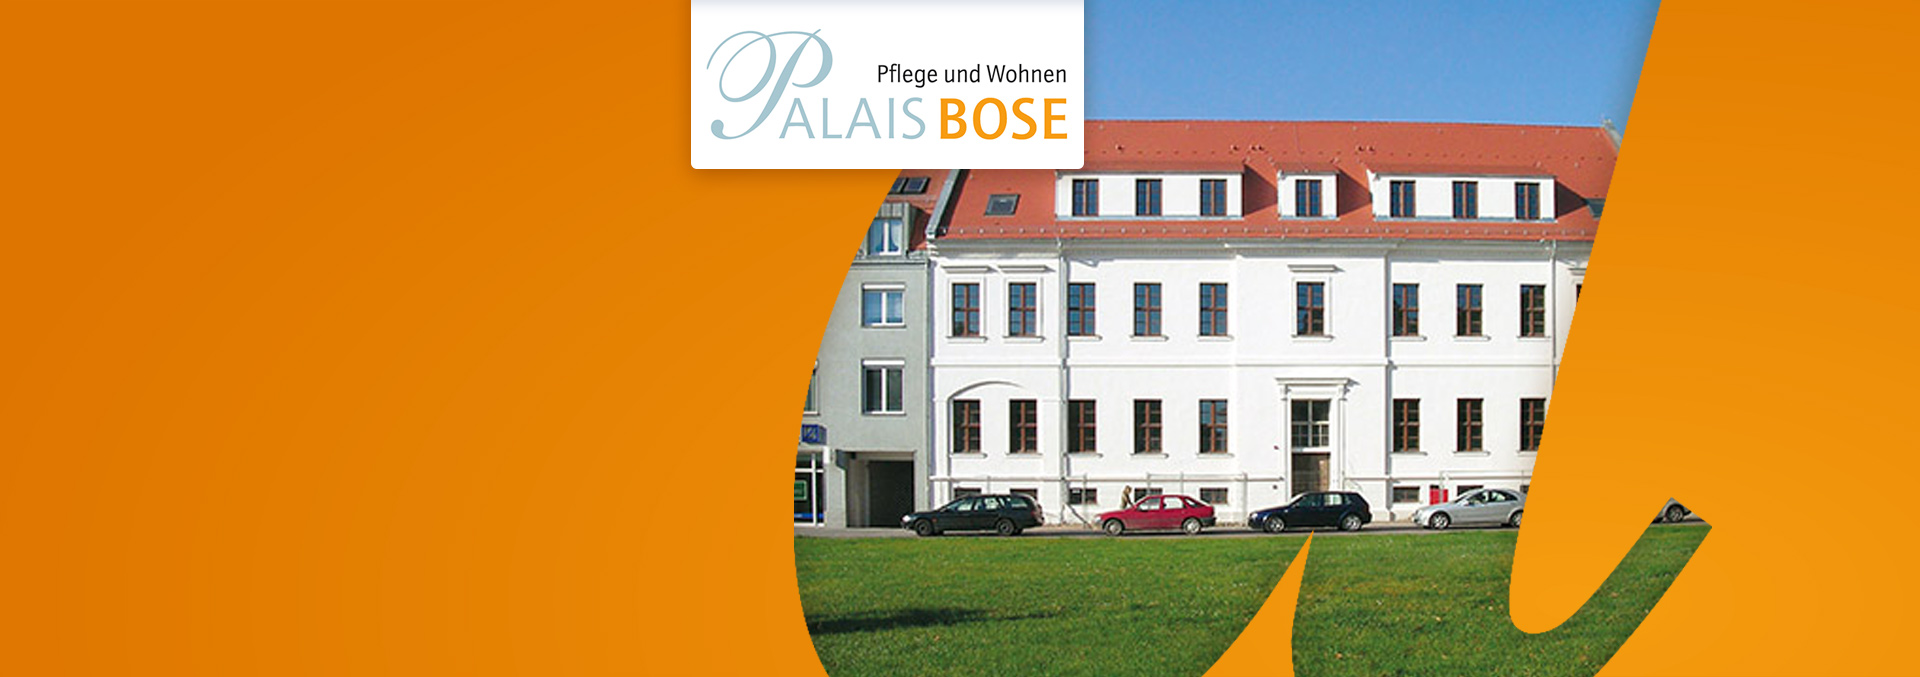 Pflege und Wohnen im Palais Bose: Rückansicht des weißen Gebäudes mit Autos davor, über eine Wiese fotografiert.